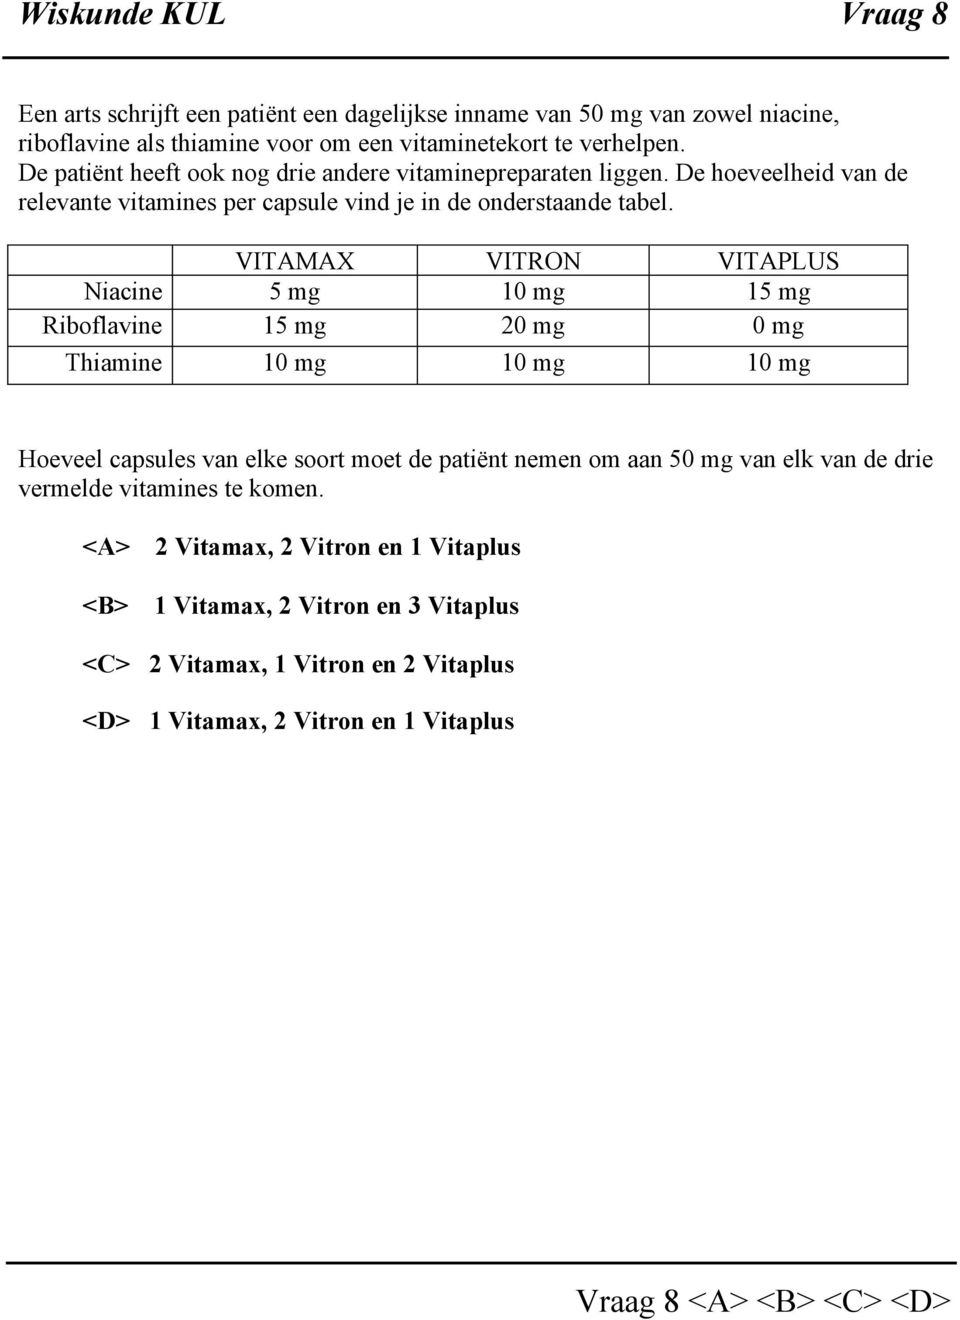 VITAMAX VITRON VITAPLUS Niacine 5 mg 10 mg 15 mg Riboflavine 15 mg 20 mg 0 mg Thiamine 10 mg 10 mg 10 mg Hoeveel capsules van elke soort moet de patiënt nemen om aan 50 mg van